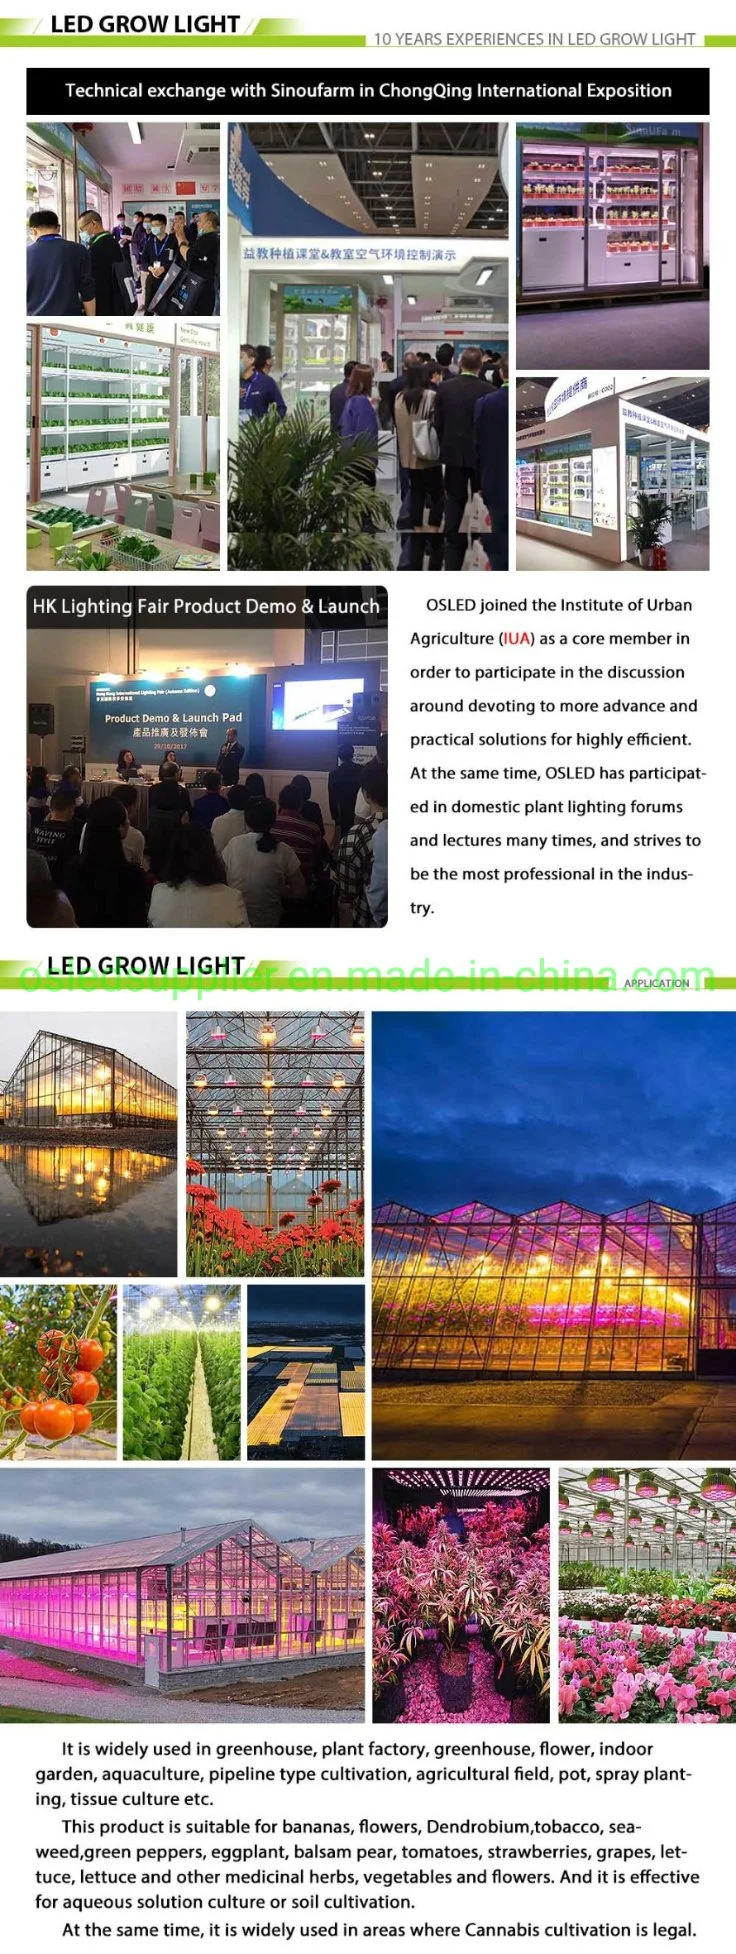 120W LED Plant Grow Light 700 Watt, Gavita Fluence DIY Full Spectrum LED Grow Lights, Daisy Chain LED Grow Light for Indoor Plants Greenhouse Veg and Flower